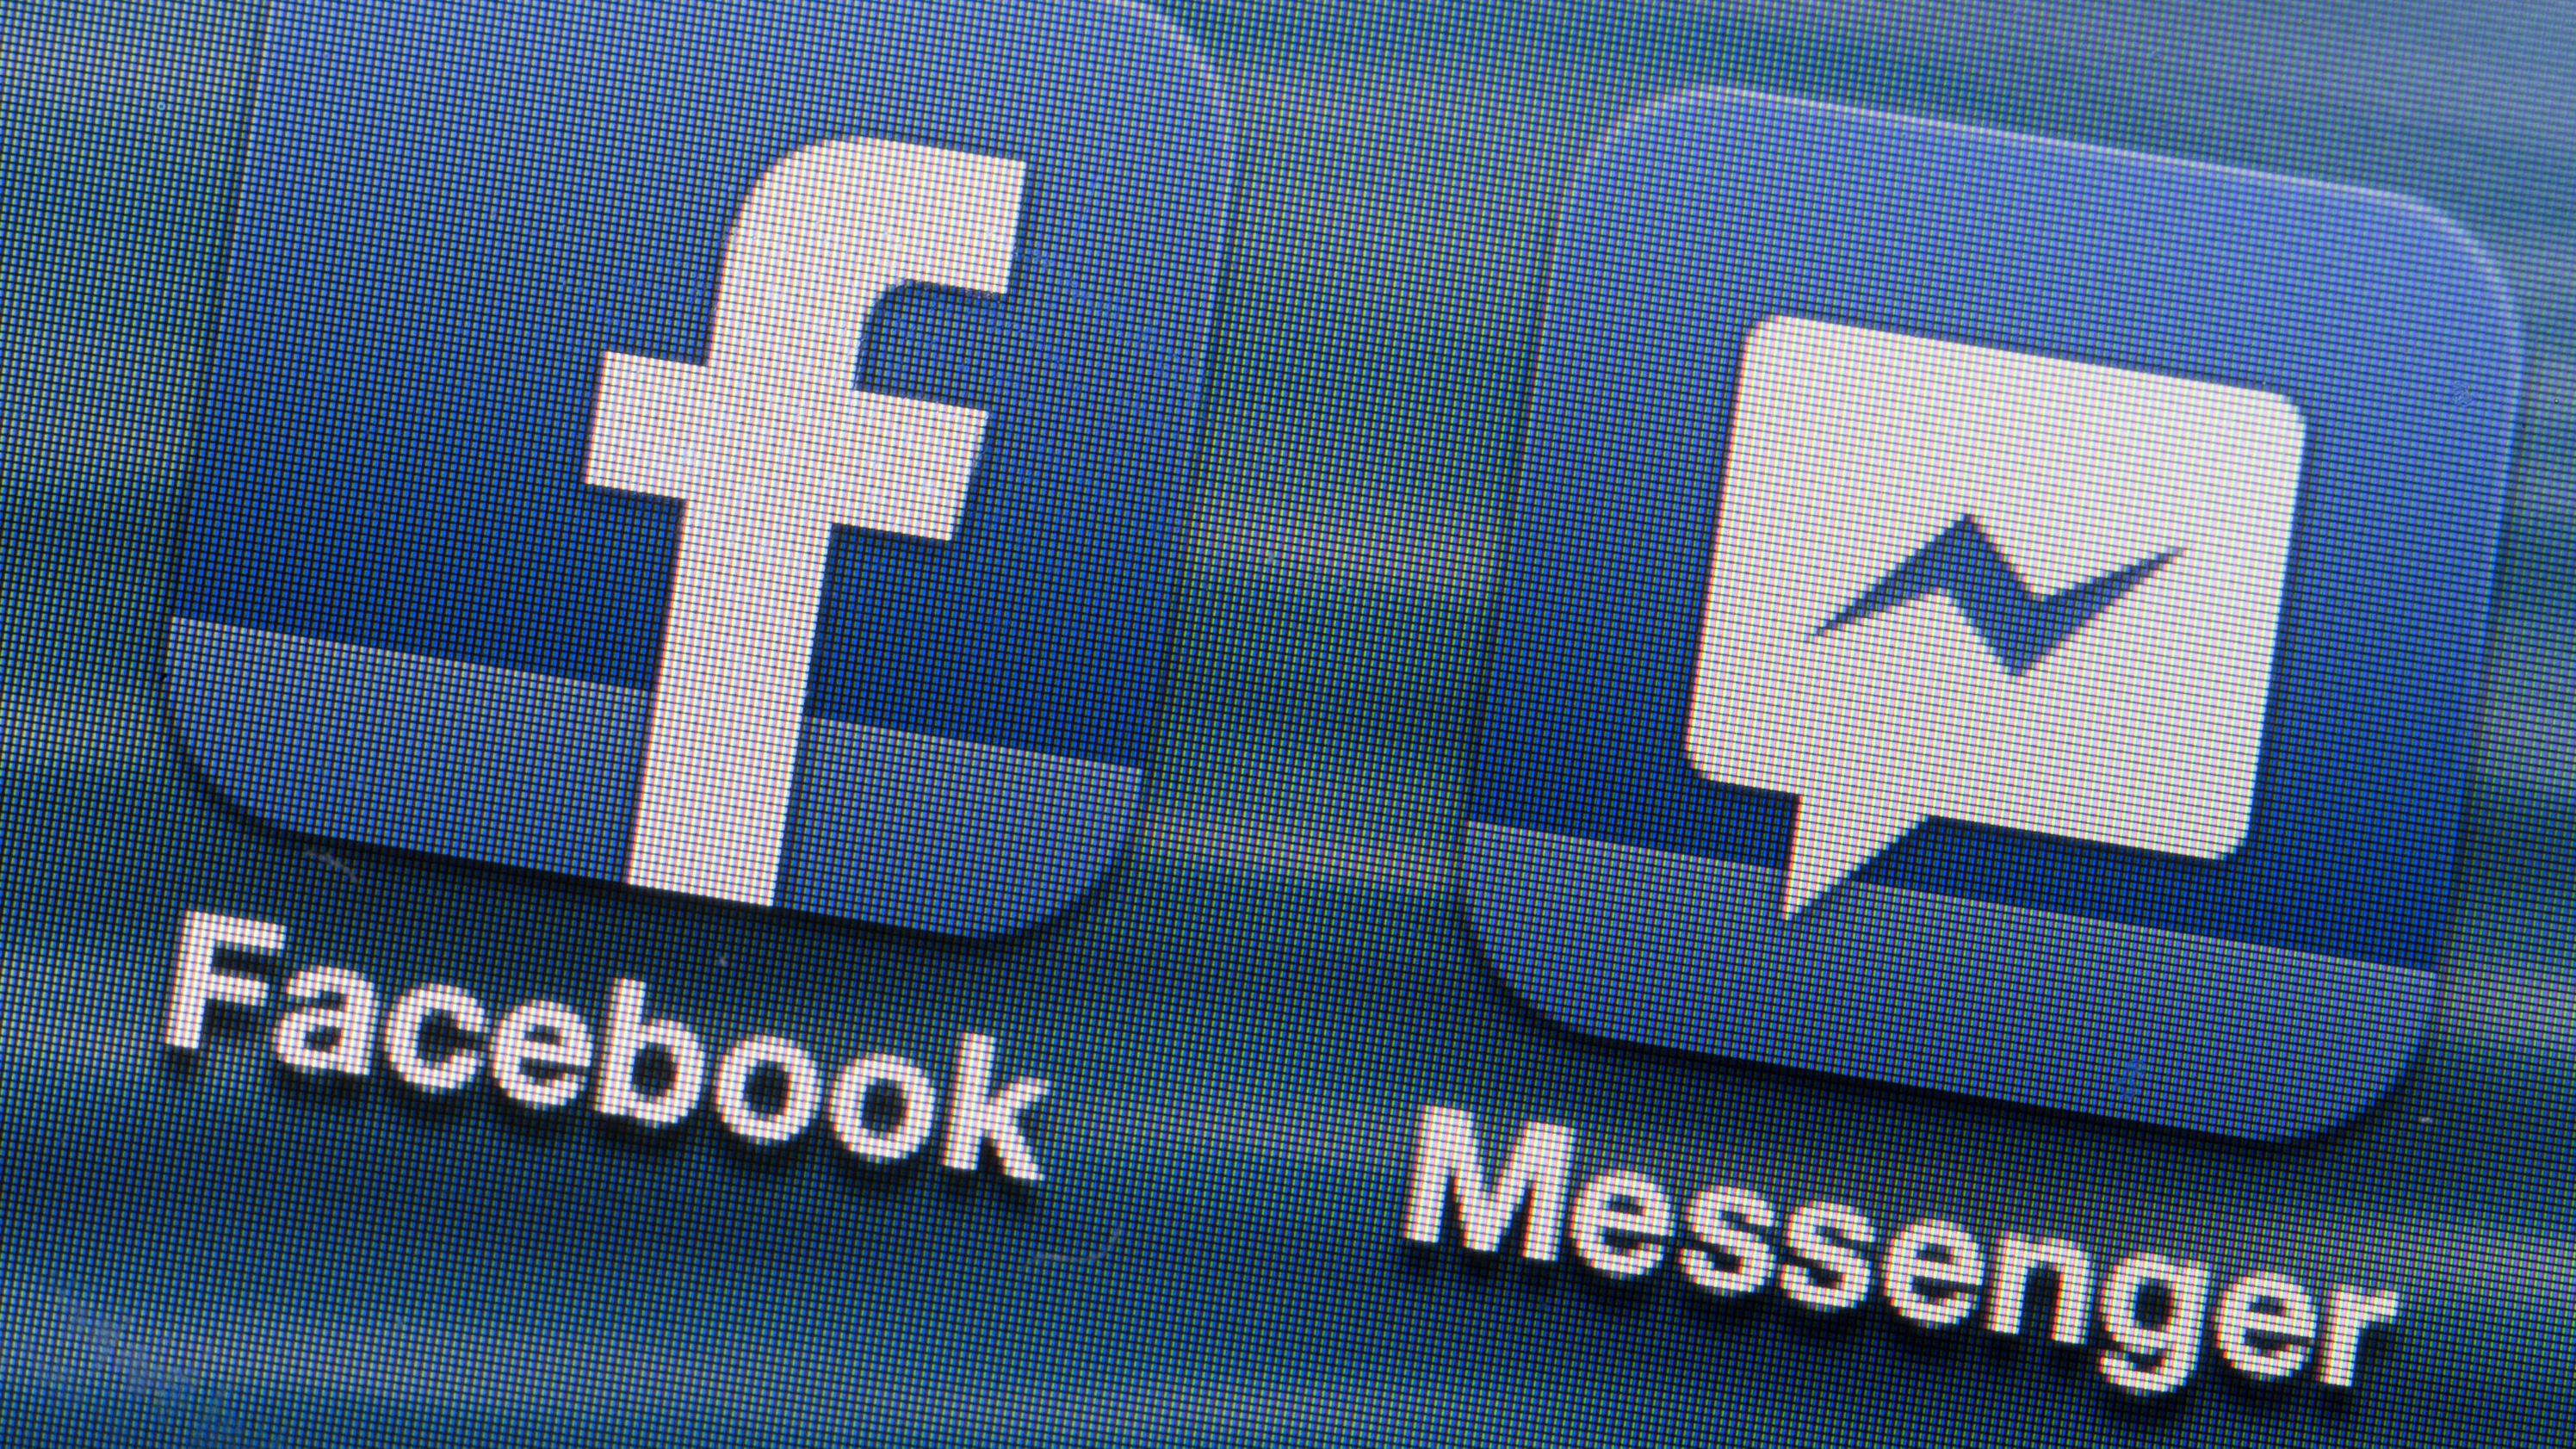 Facebook-Messenger-Virus: nicht klicken! Es ist ein Trojaner